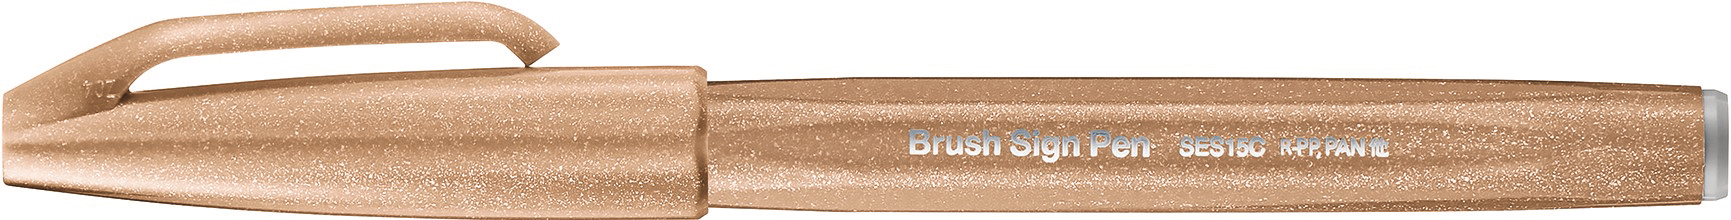 PENTEL Brush Sign Pen SES15C-E2 brun noyer brun noyer